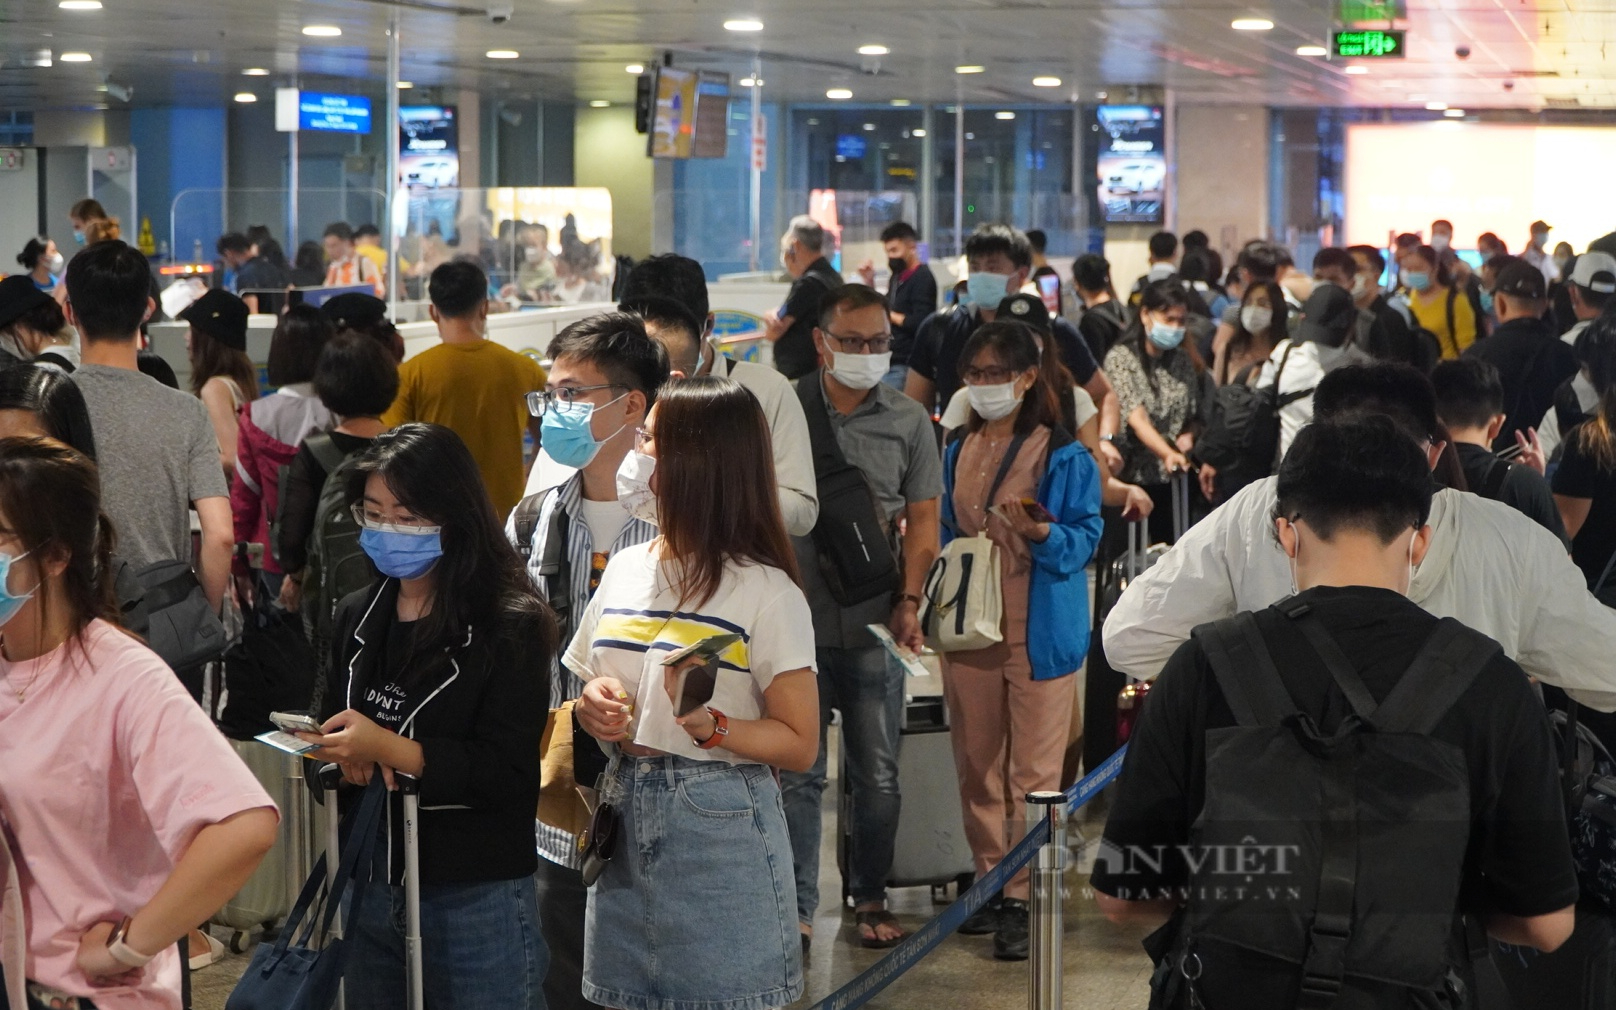 Tiếp tục các giải pháp kéo giảm ùn tắc tại sân bay Tân Sơn Nhất